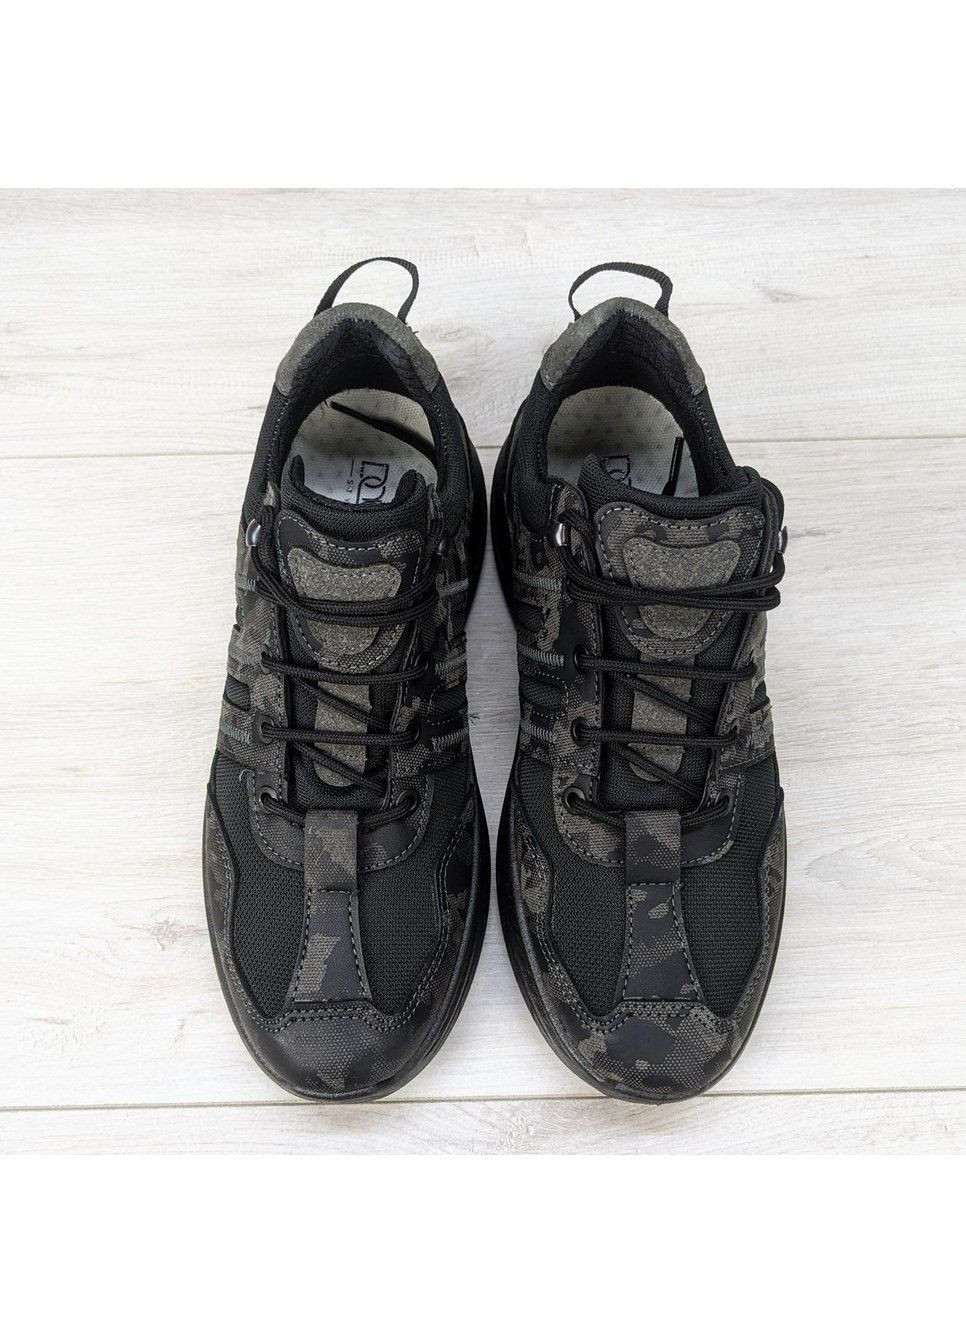 Чорні Осінні кросівки чоловічі чорні з камуфляжем еко-шкіракросівки чоловічі чорні з камуфляжем еко-шкіра Dago